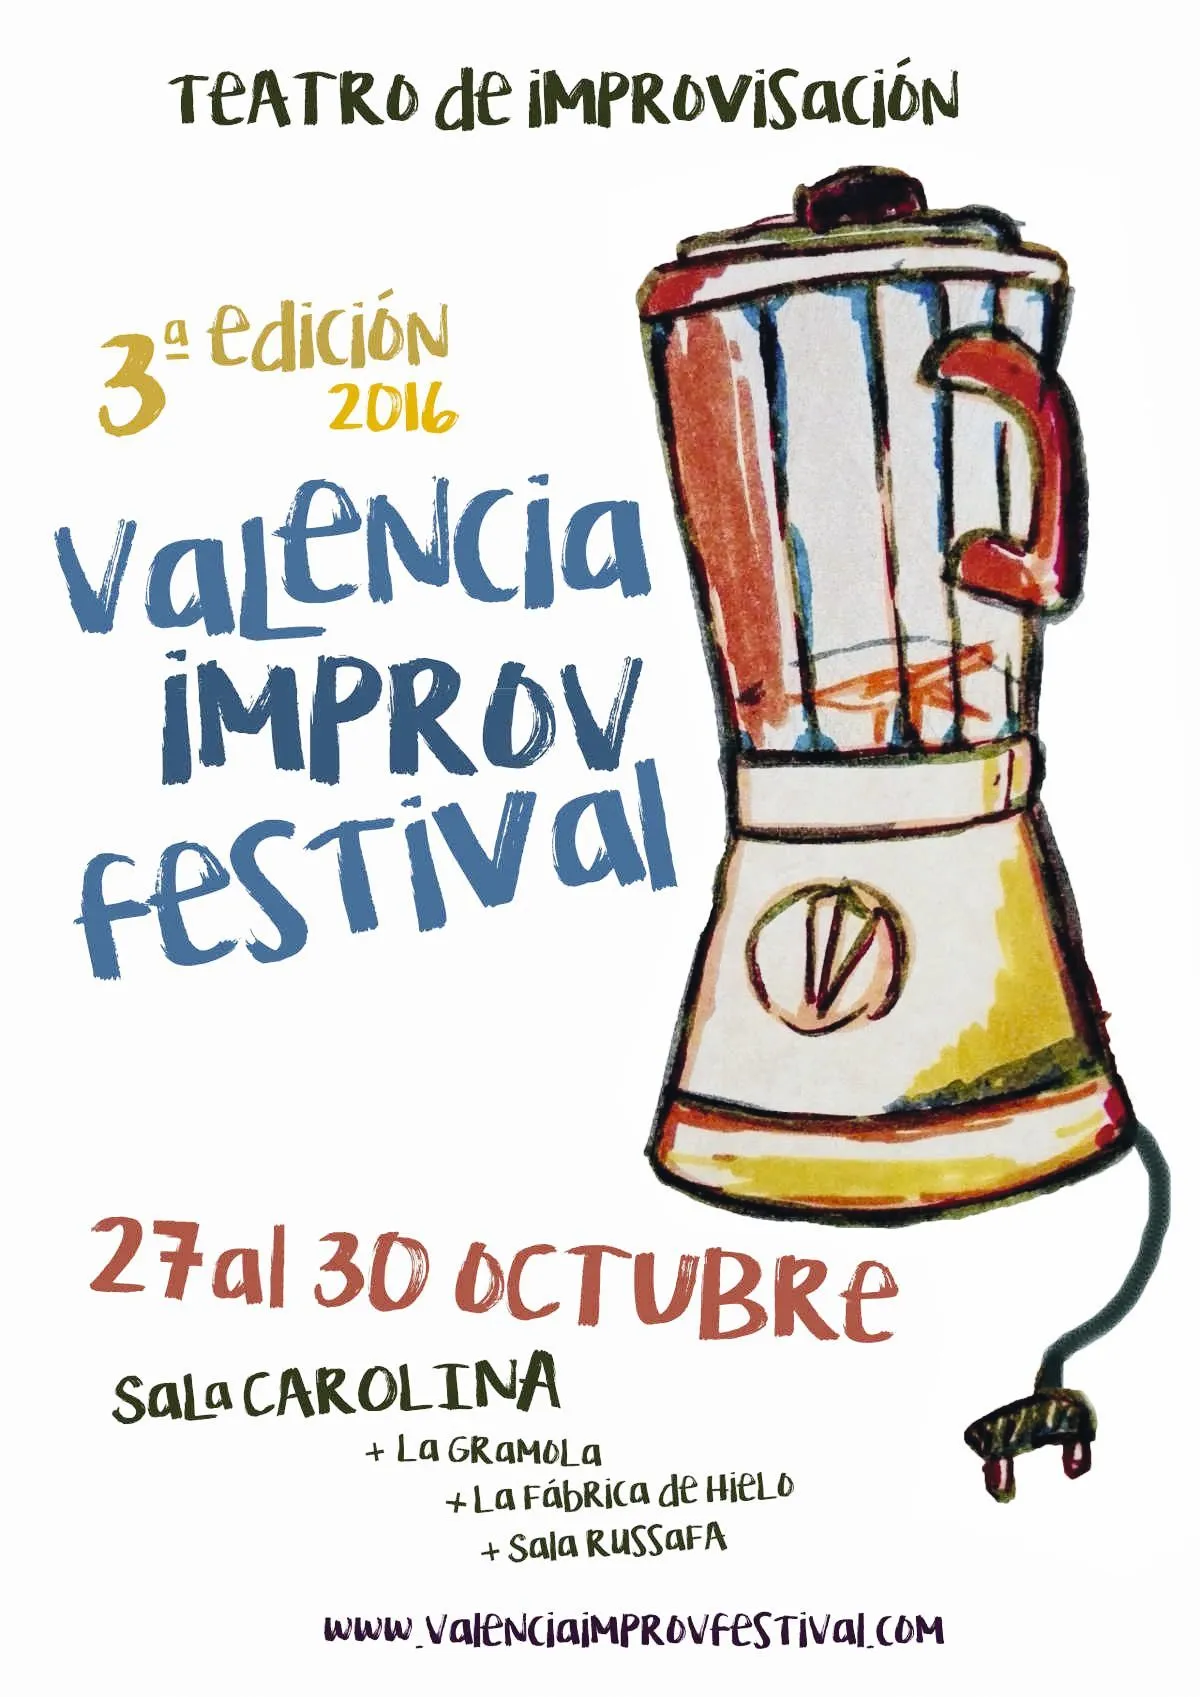 Cartel de promoción para el concurso de 
improvisación de Valencia, 2017.